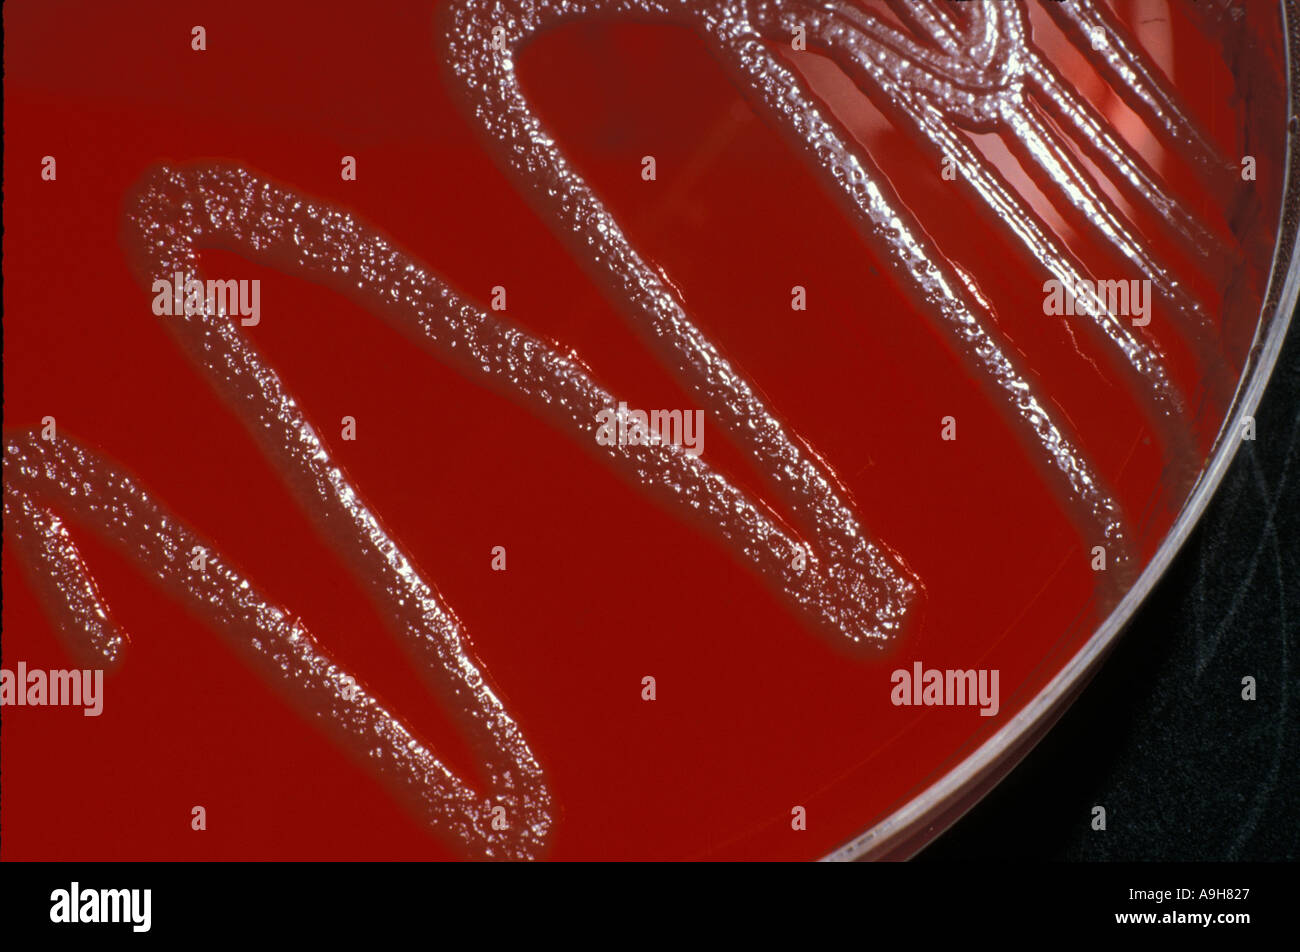 Scientific batteri Escherichia coli le colonie cresciute su agar 1 95 4 22 Foto Stock